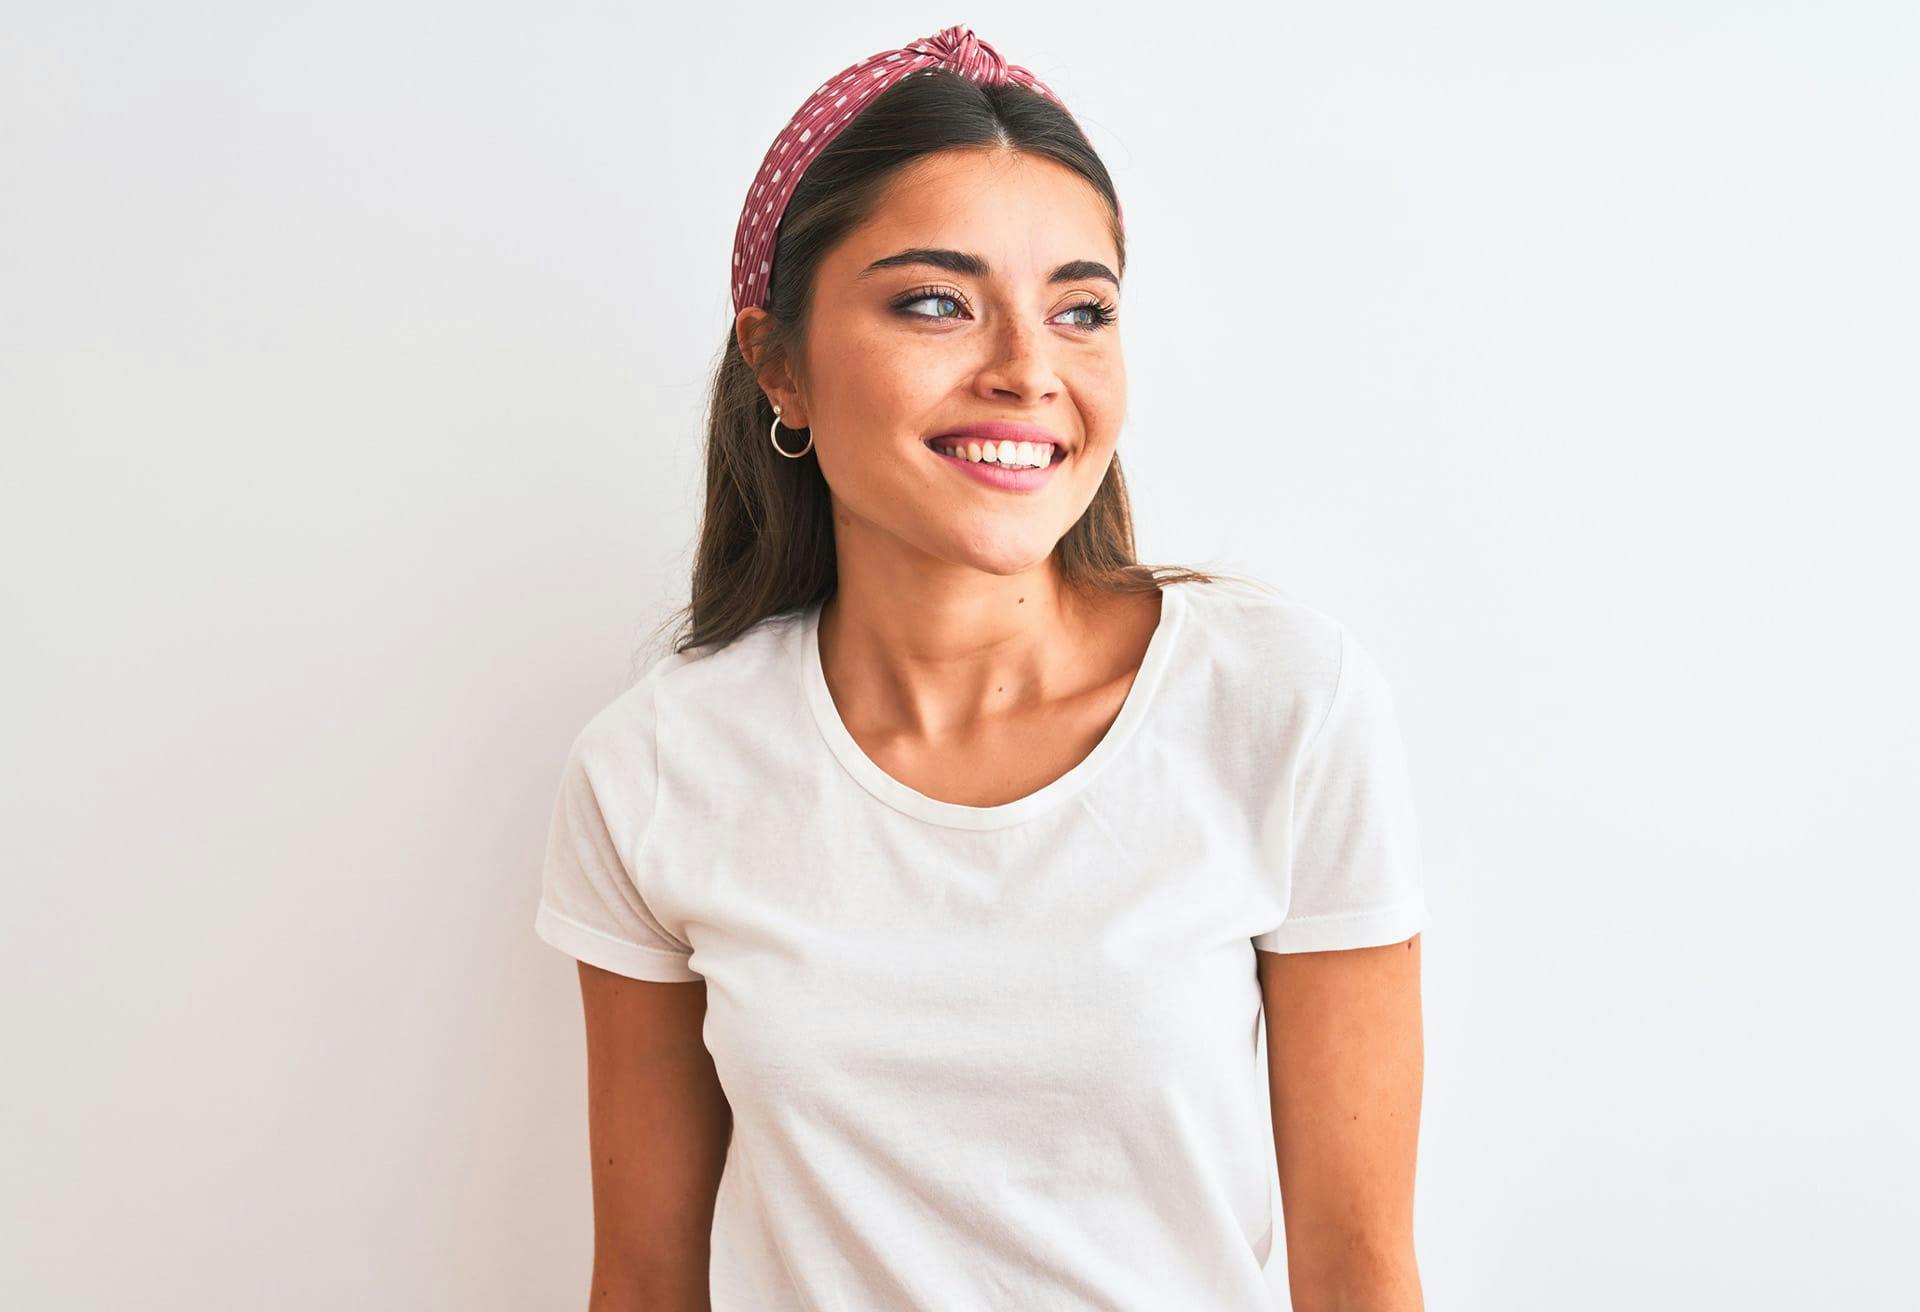 Woman with polka dot headband smiling